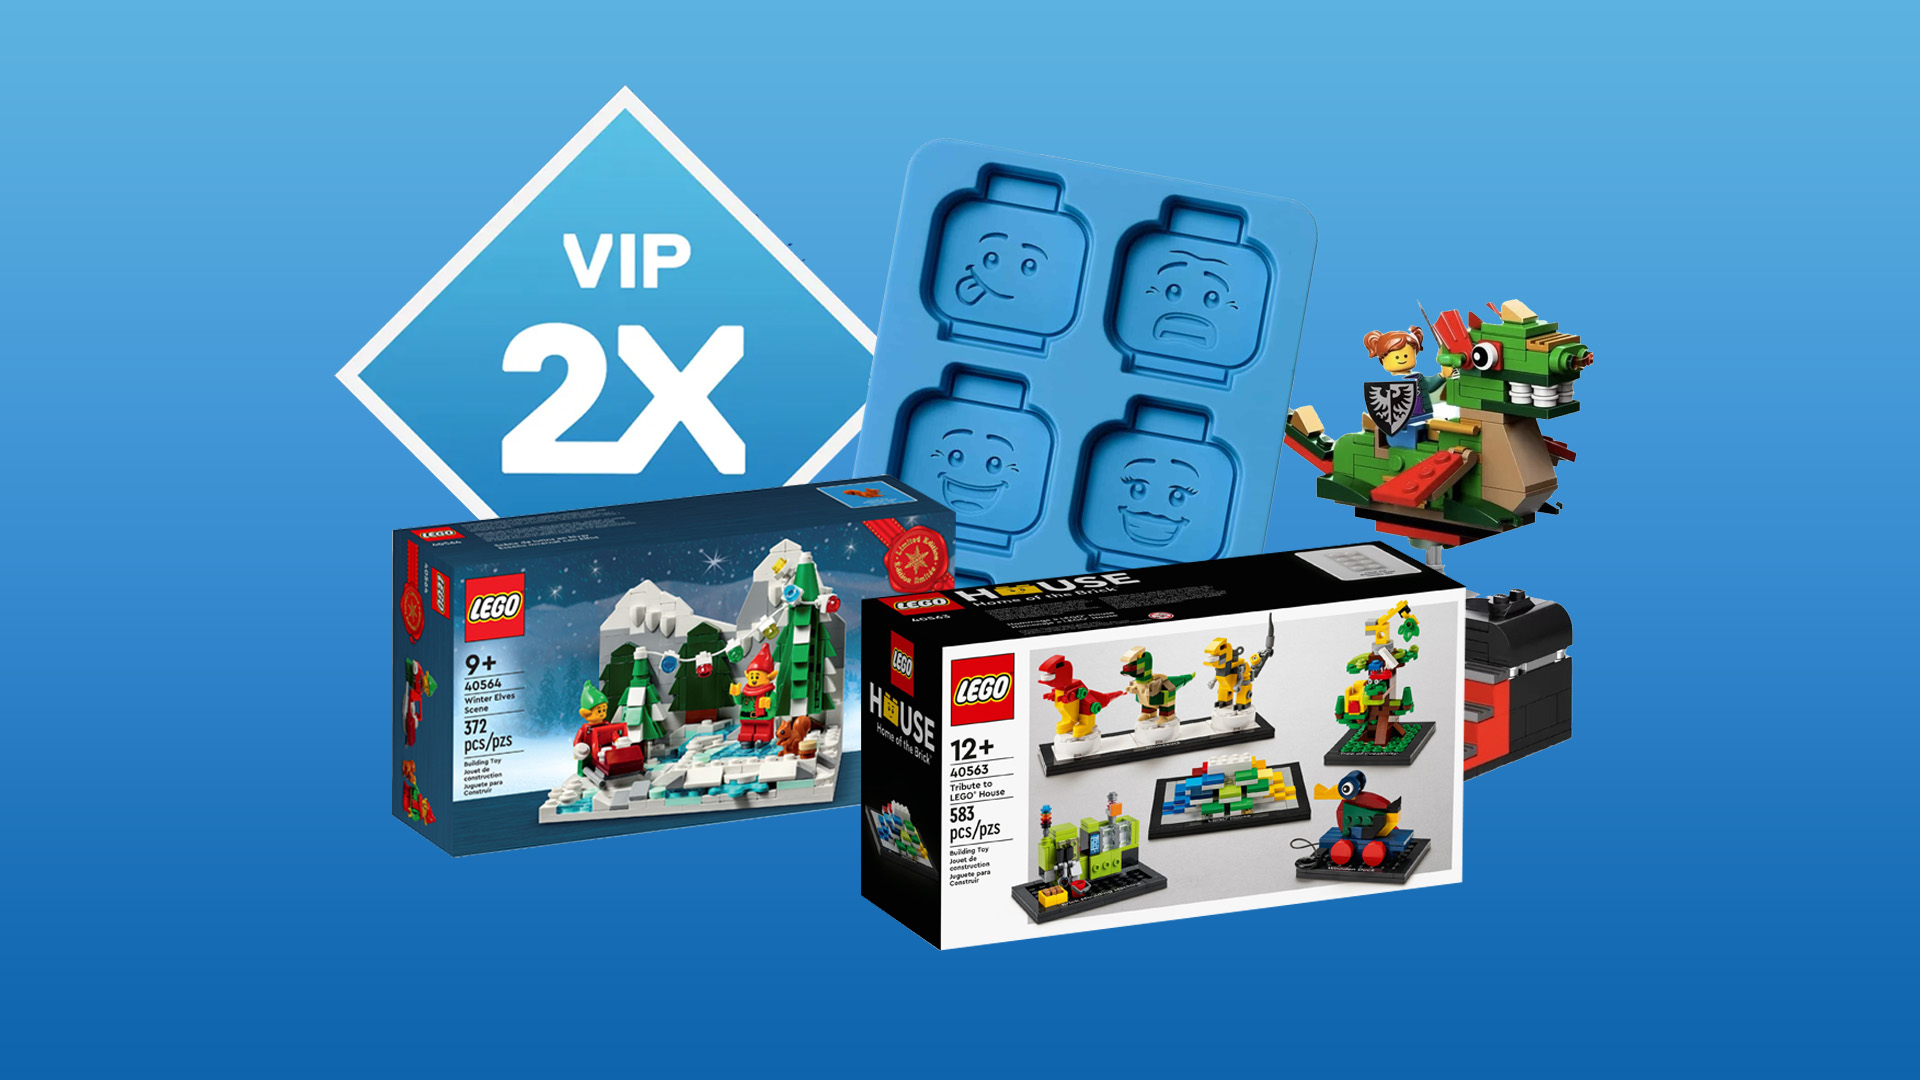 Profiteer dit weekend als LEGO VIP van enorme kortingen en gratis sets!